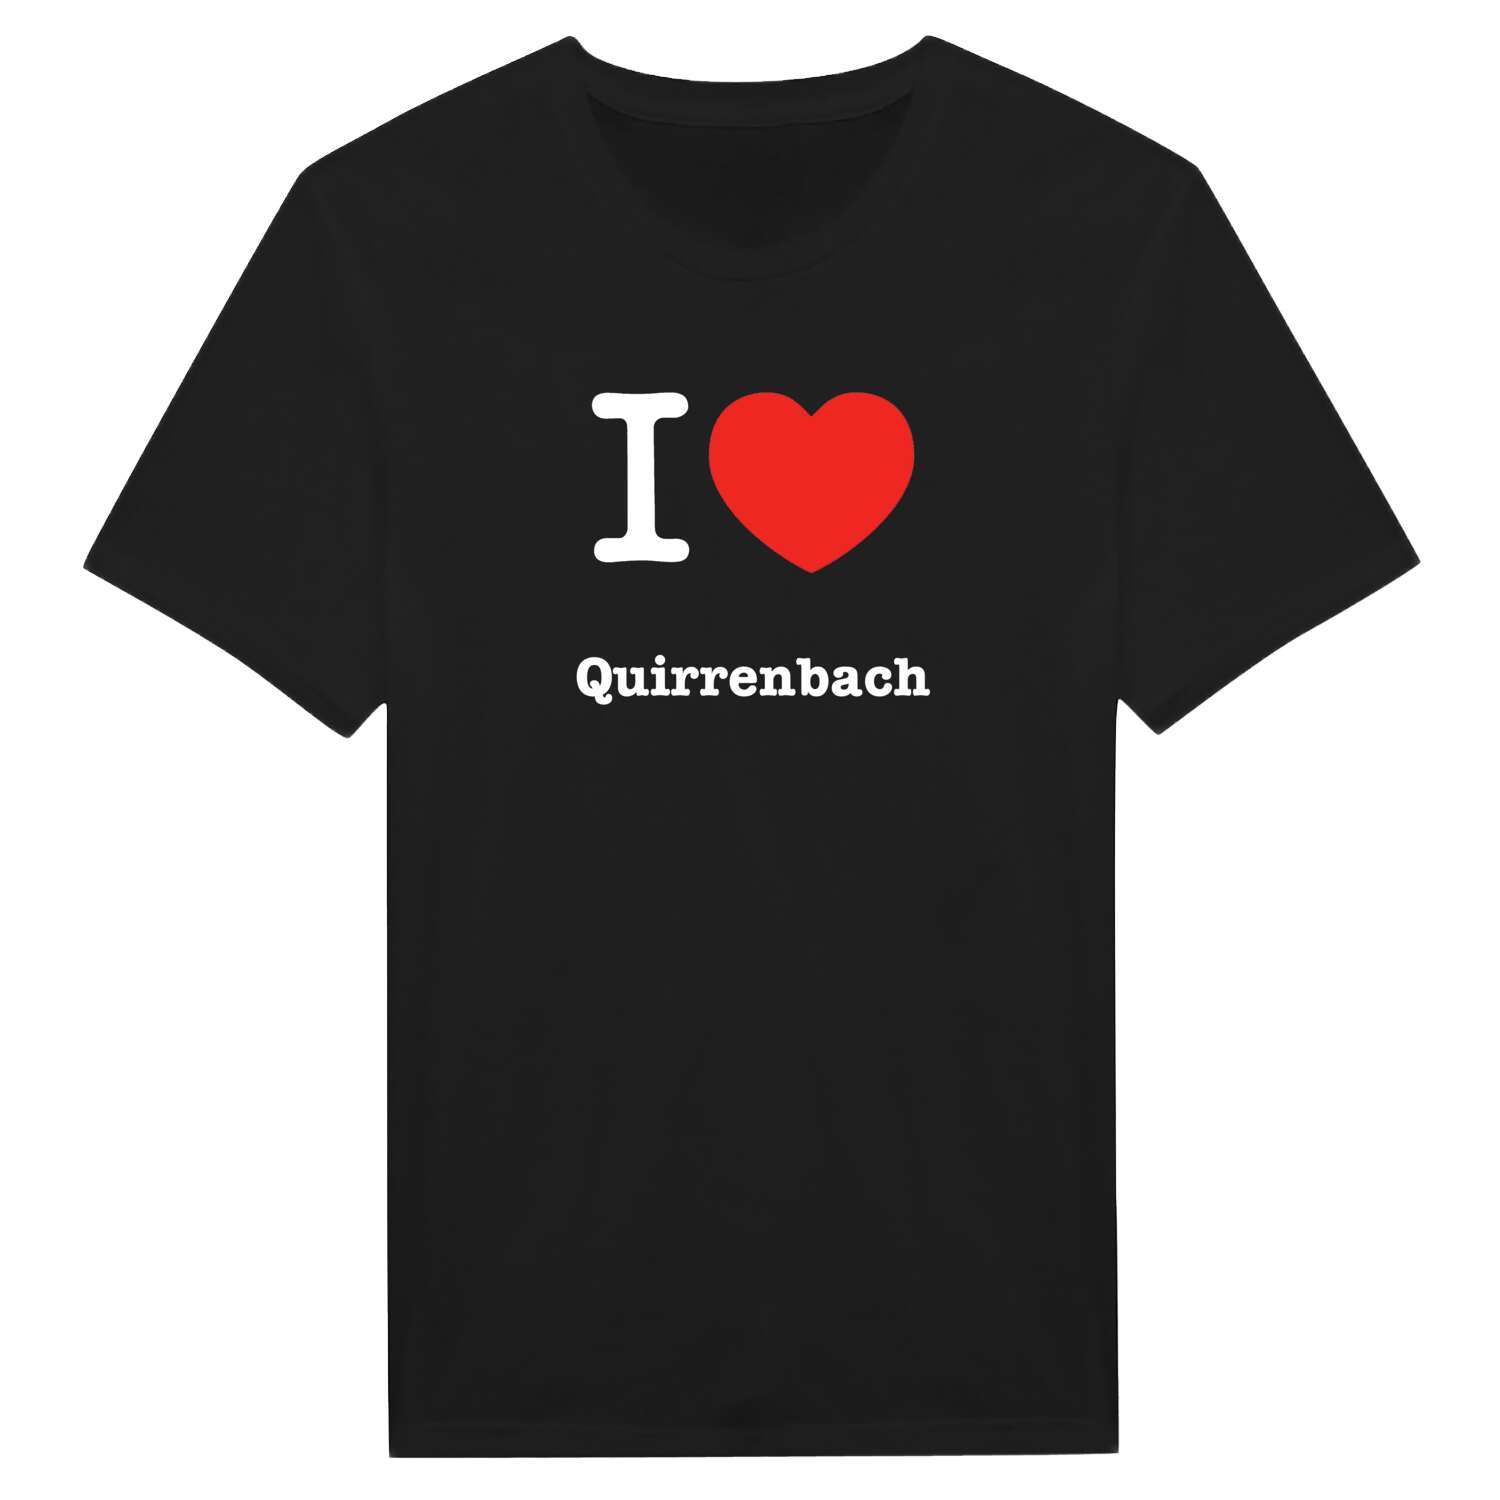 Quirrenbach T-Shirt »I love«